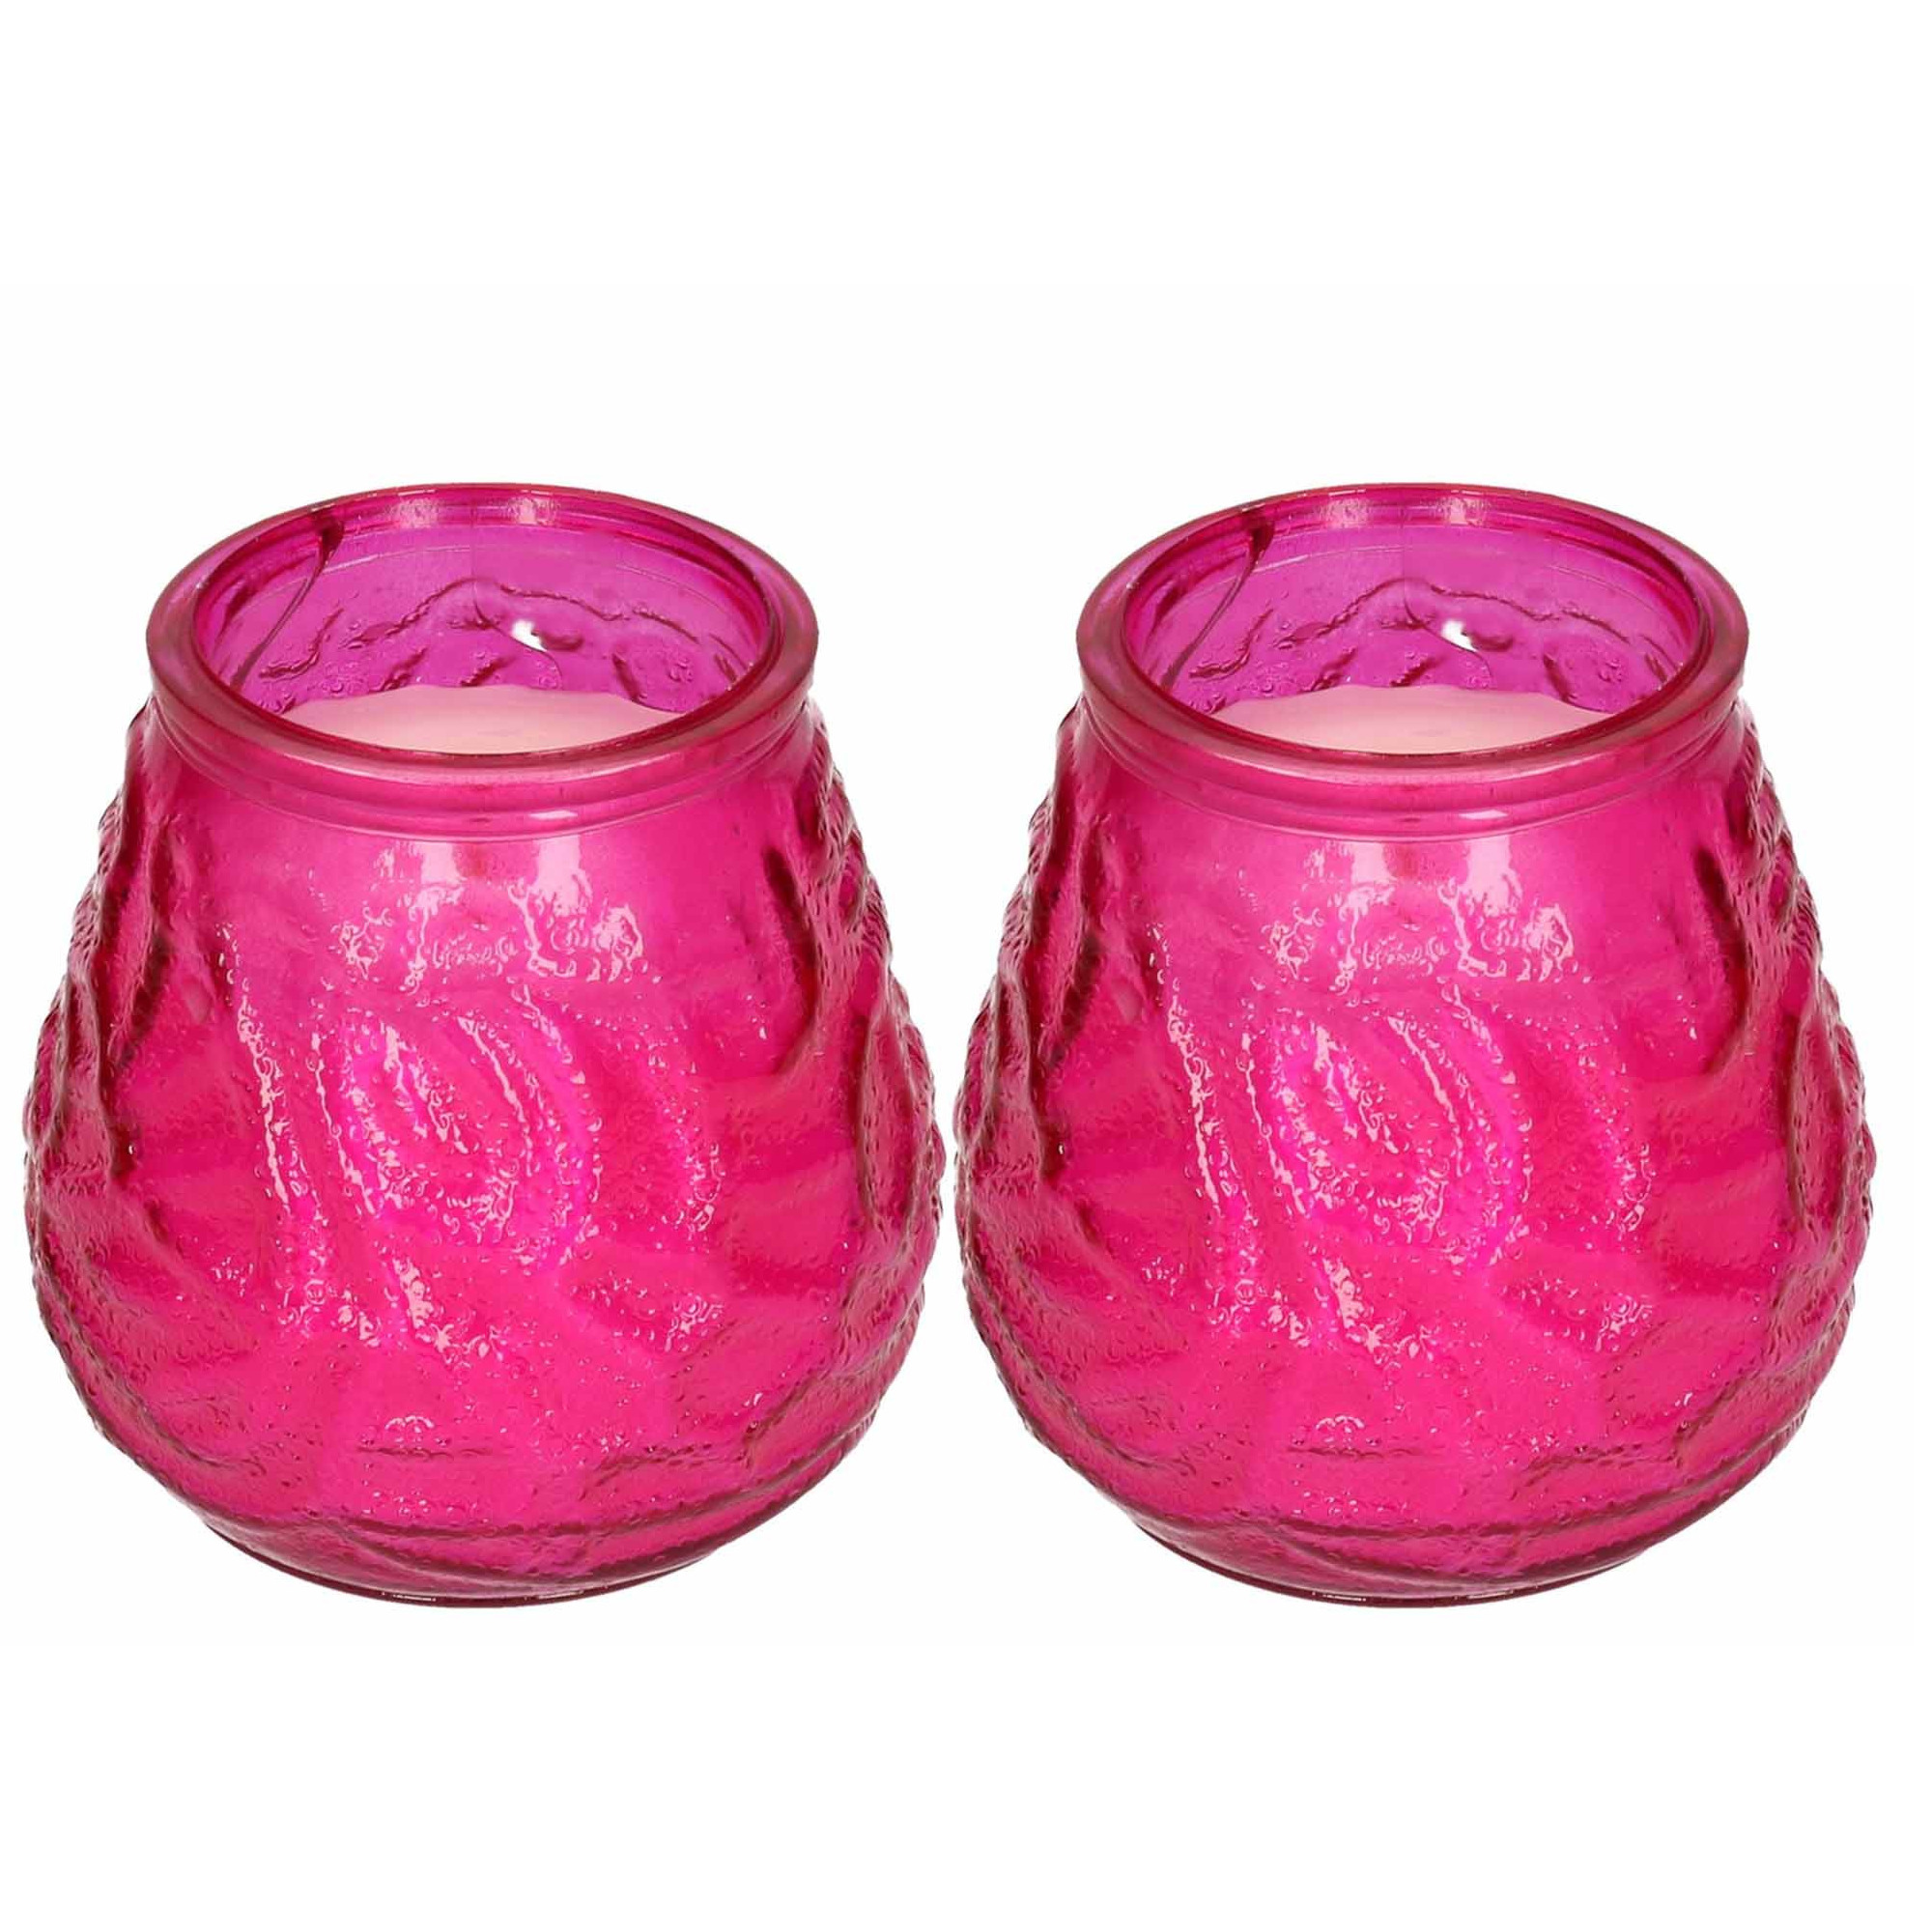 Windlicht geurkaars 2x roze glas 48 branduren citrusgeur